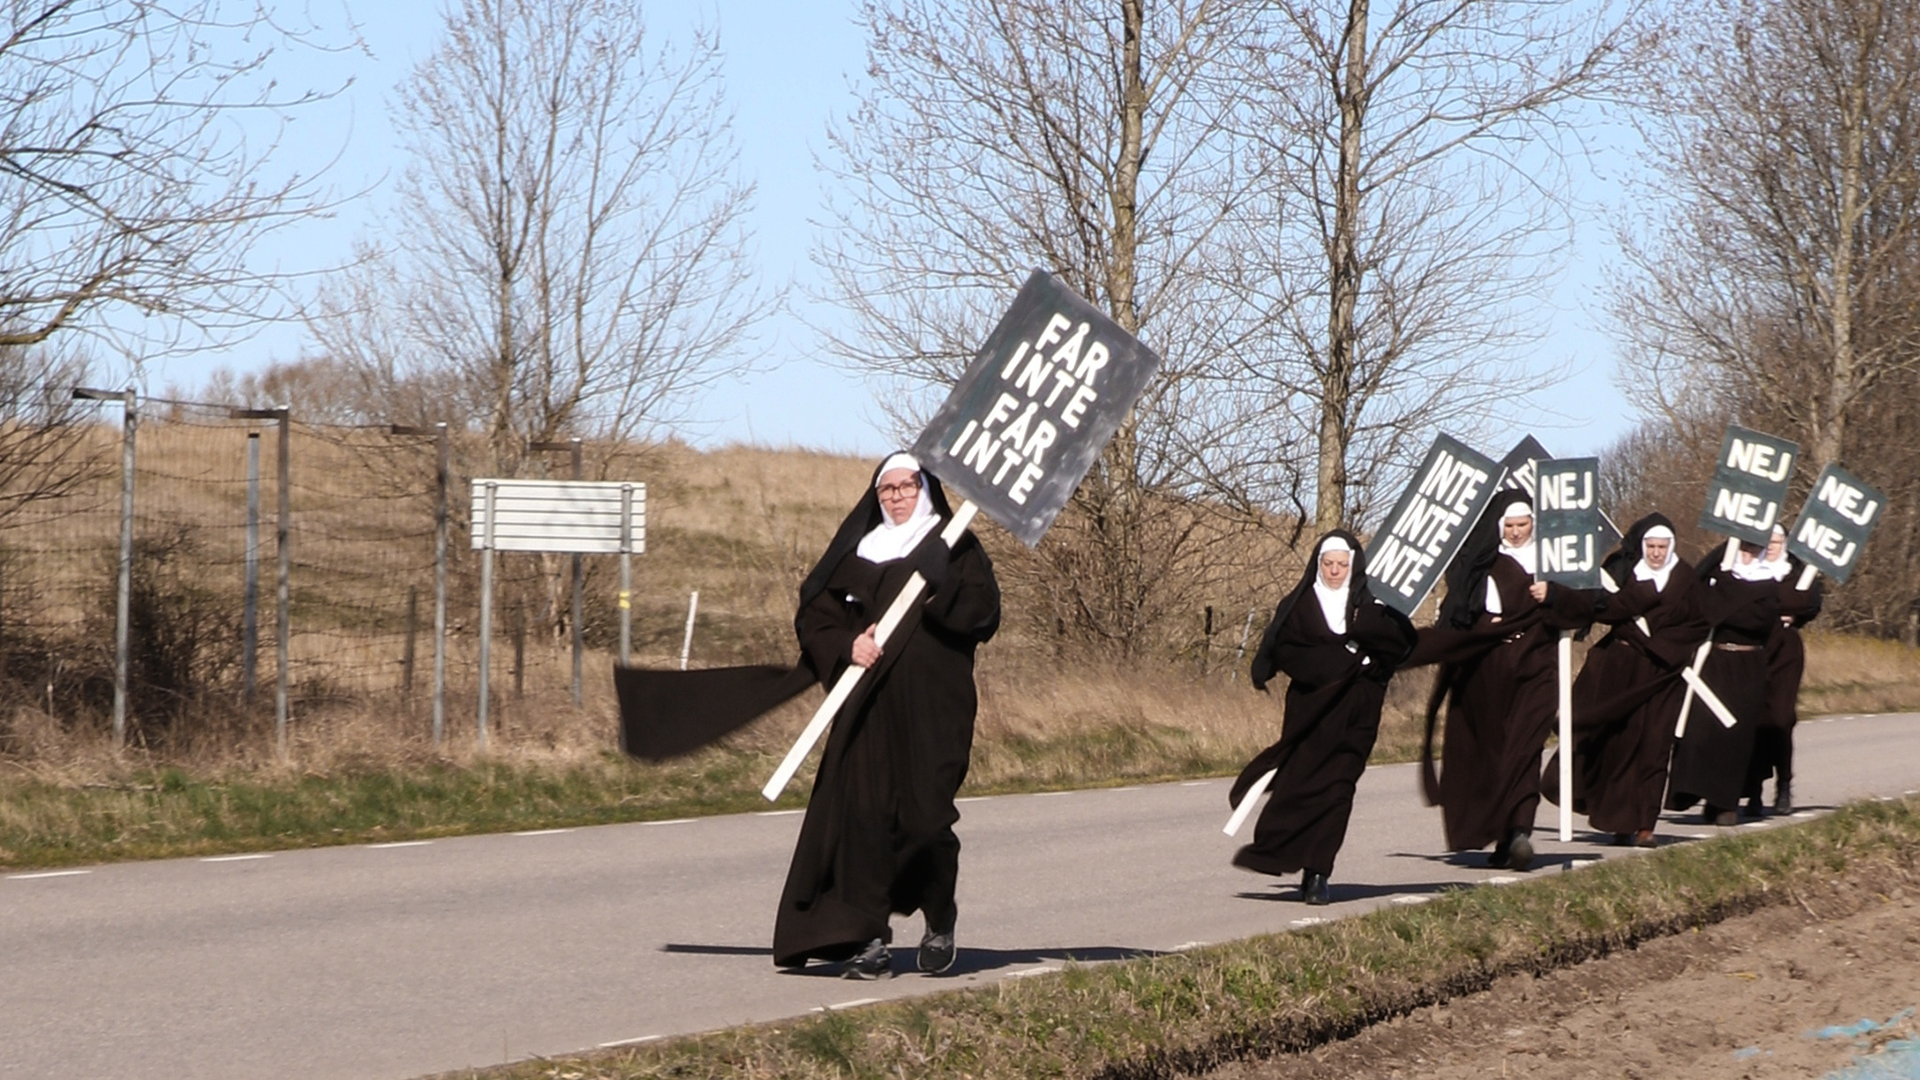 Nunnor går på en väg med plakat där det står "Får inte, får inte", "Nej, nej, nej". Det är höst eller tidig vår.